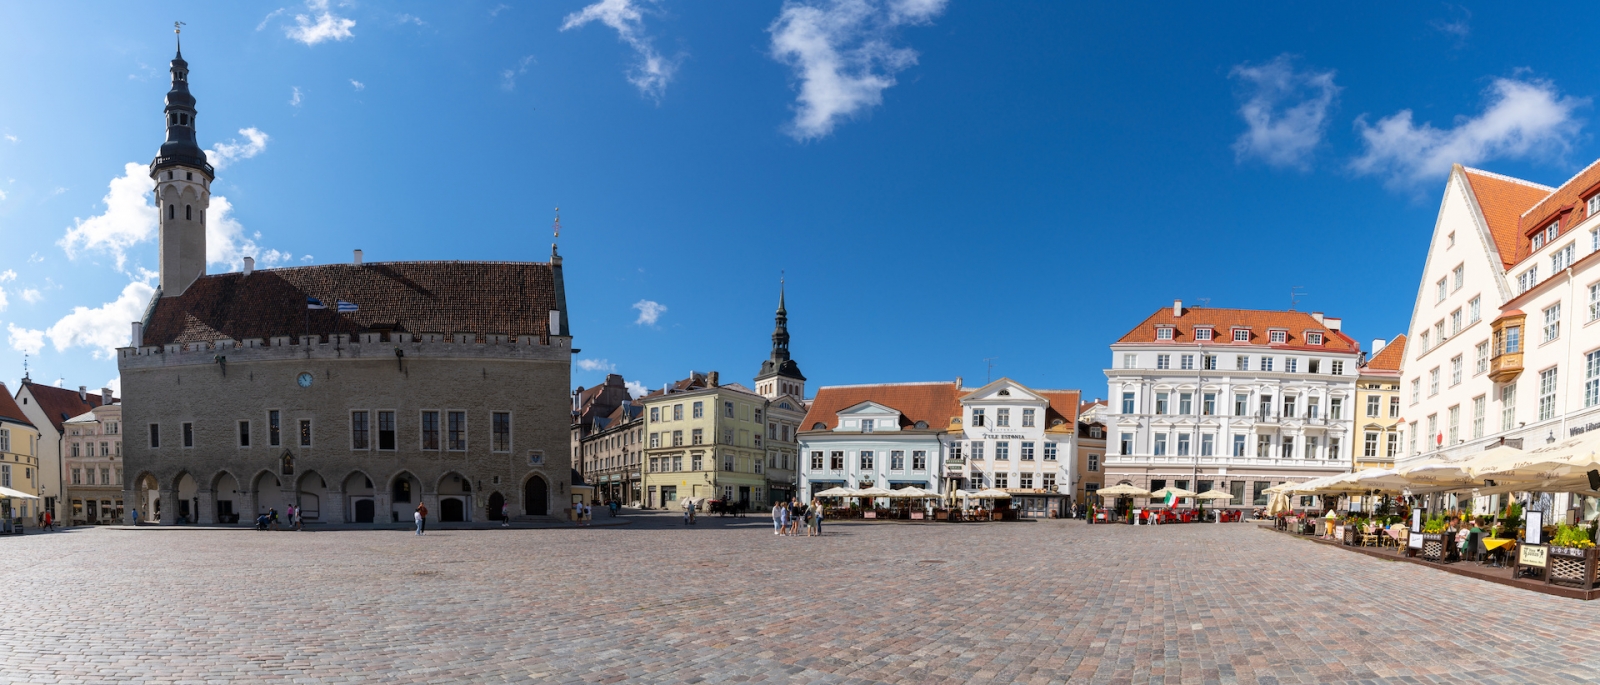 vista della piazza Raekoja nel centro storico della città di Tallinn